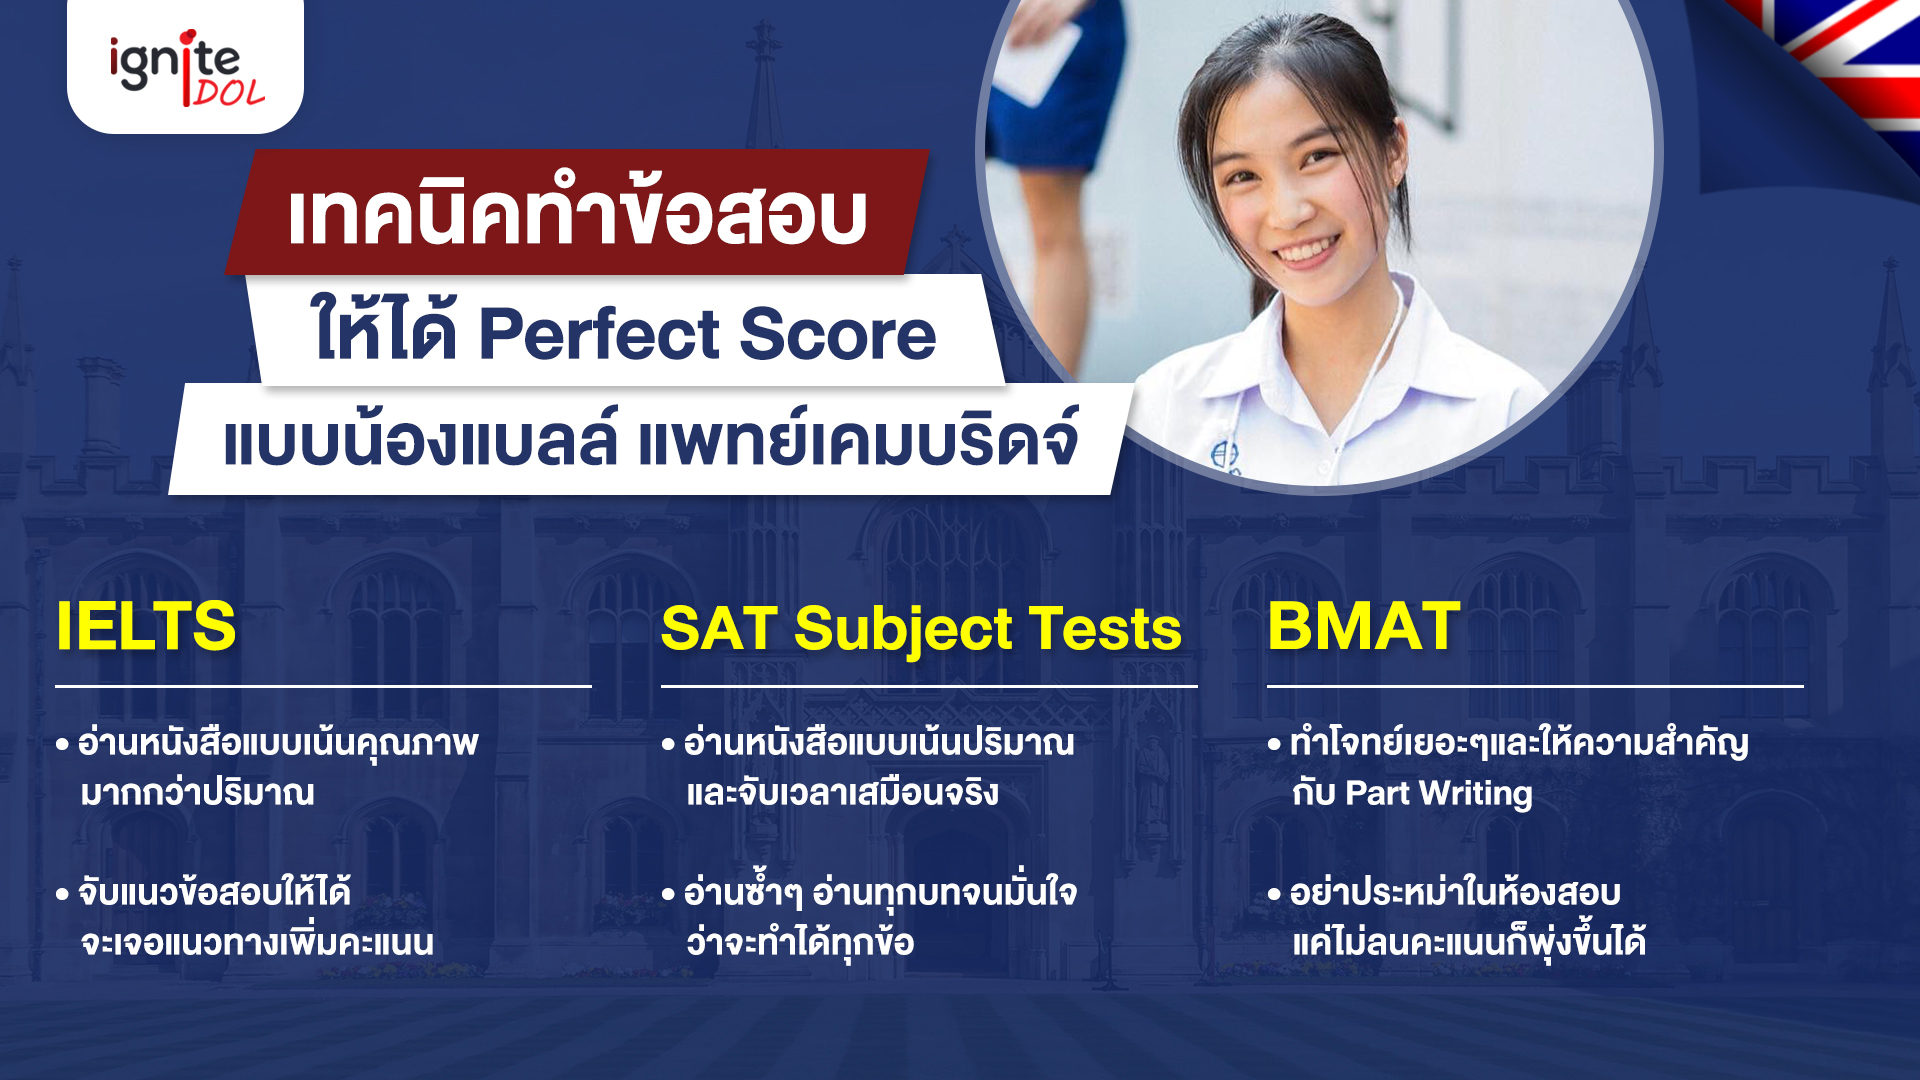 วิธีทำให้ได้ - Perfect Score - IELTS - SAT Subject Tests - BMAT - แบบน้องแบลล์ - Bigcover4